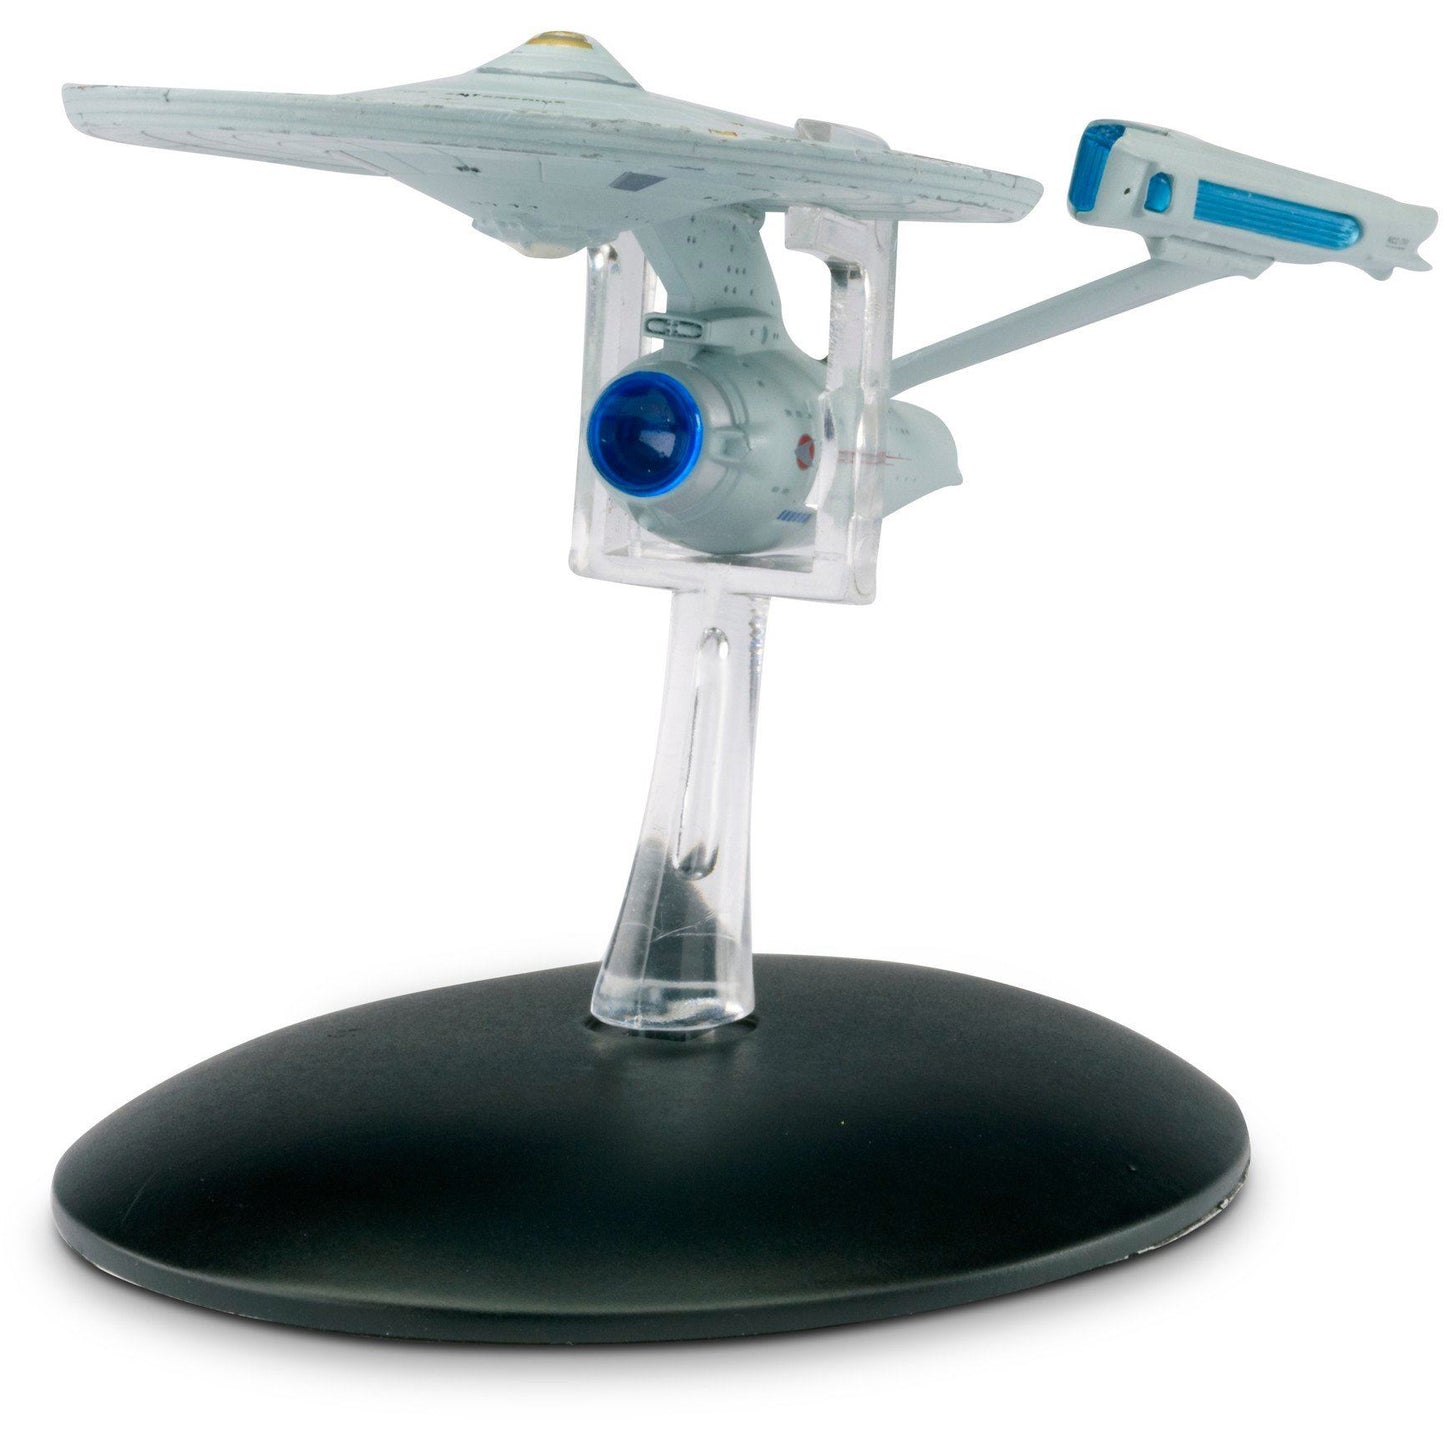 Eaglemoss Star Trek #02 Enterprise NCC-1701 TMP Model Die Cast Ship